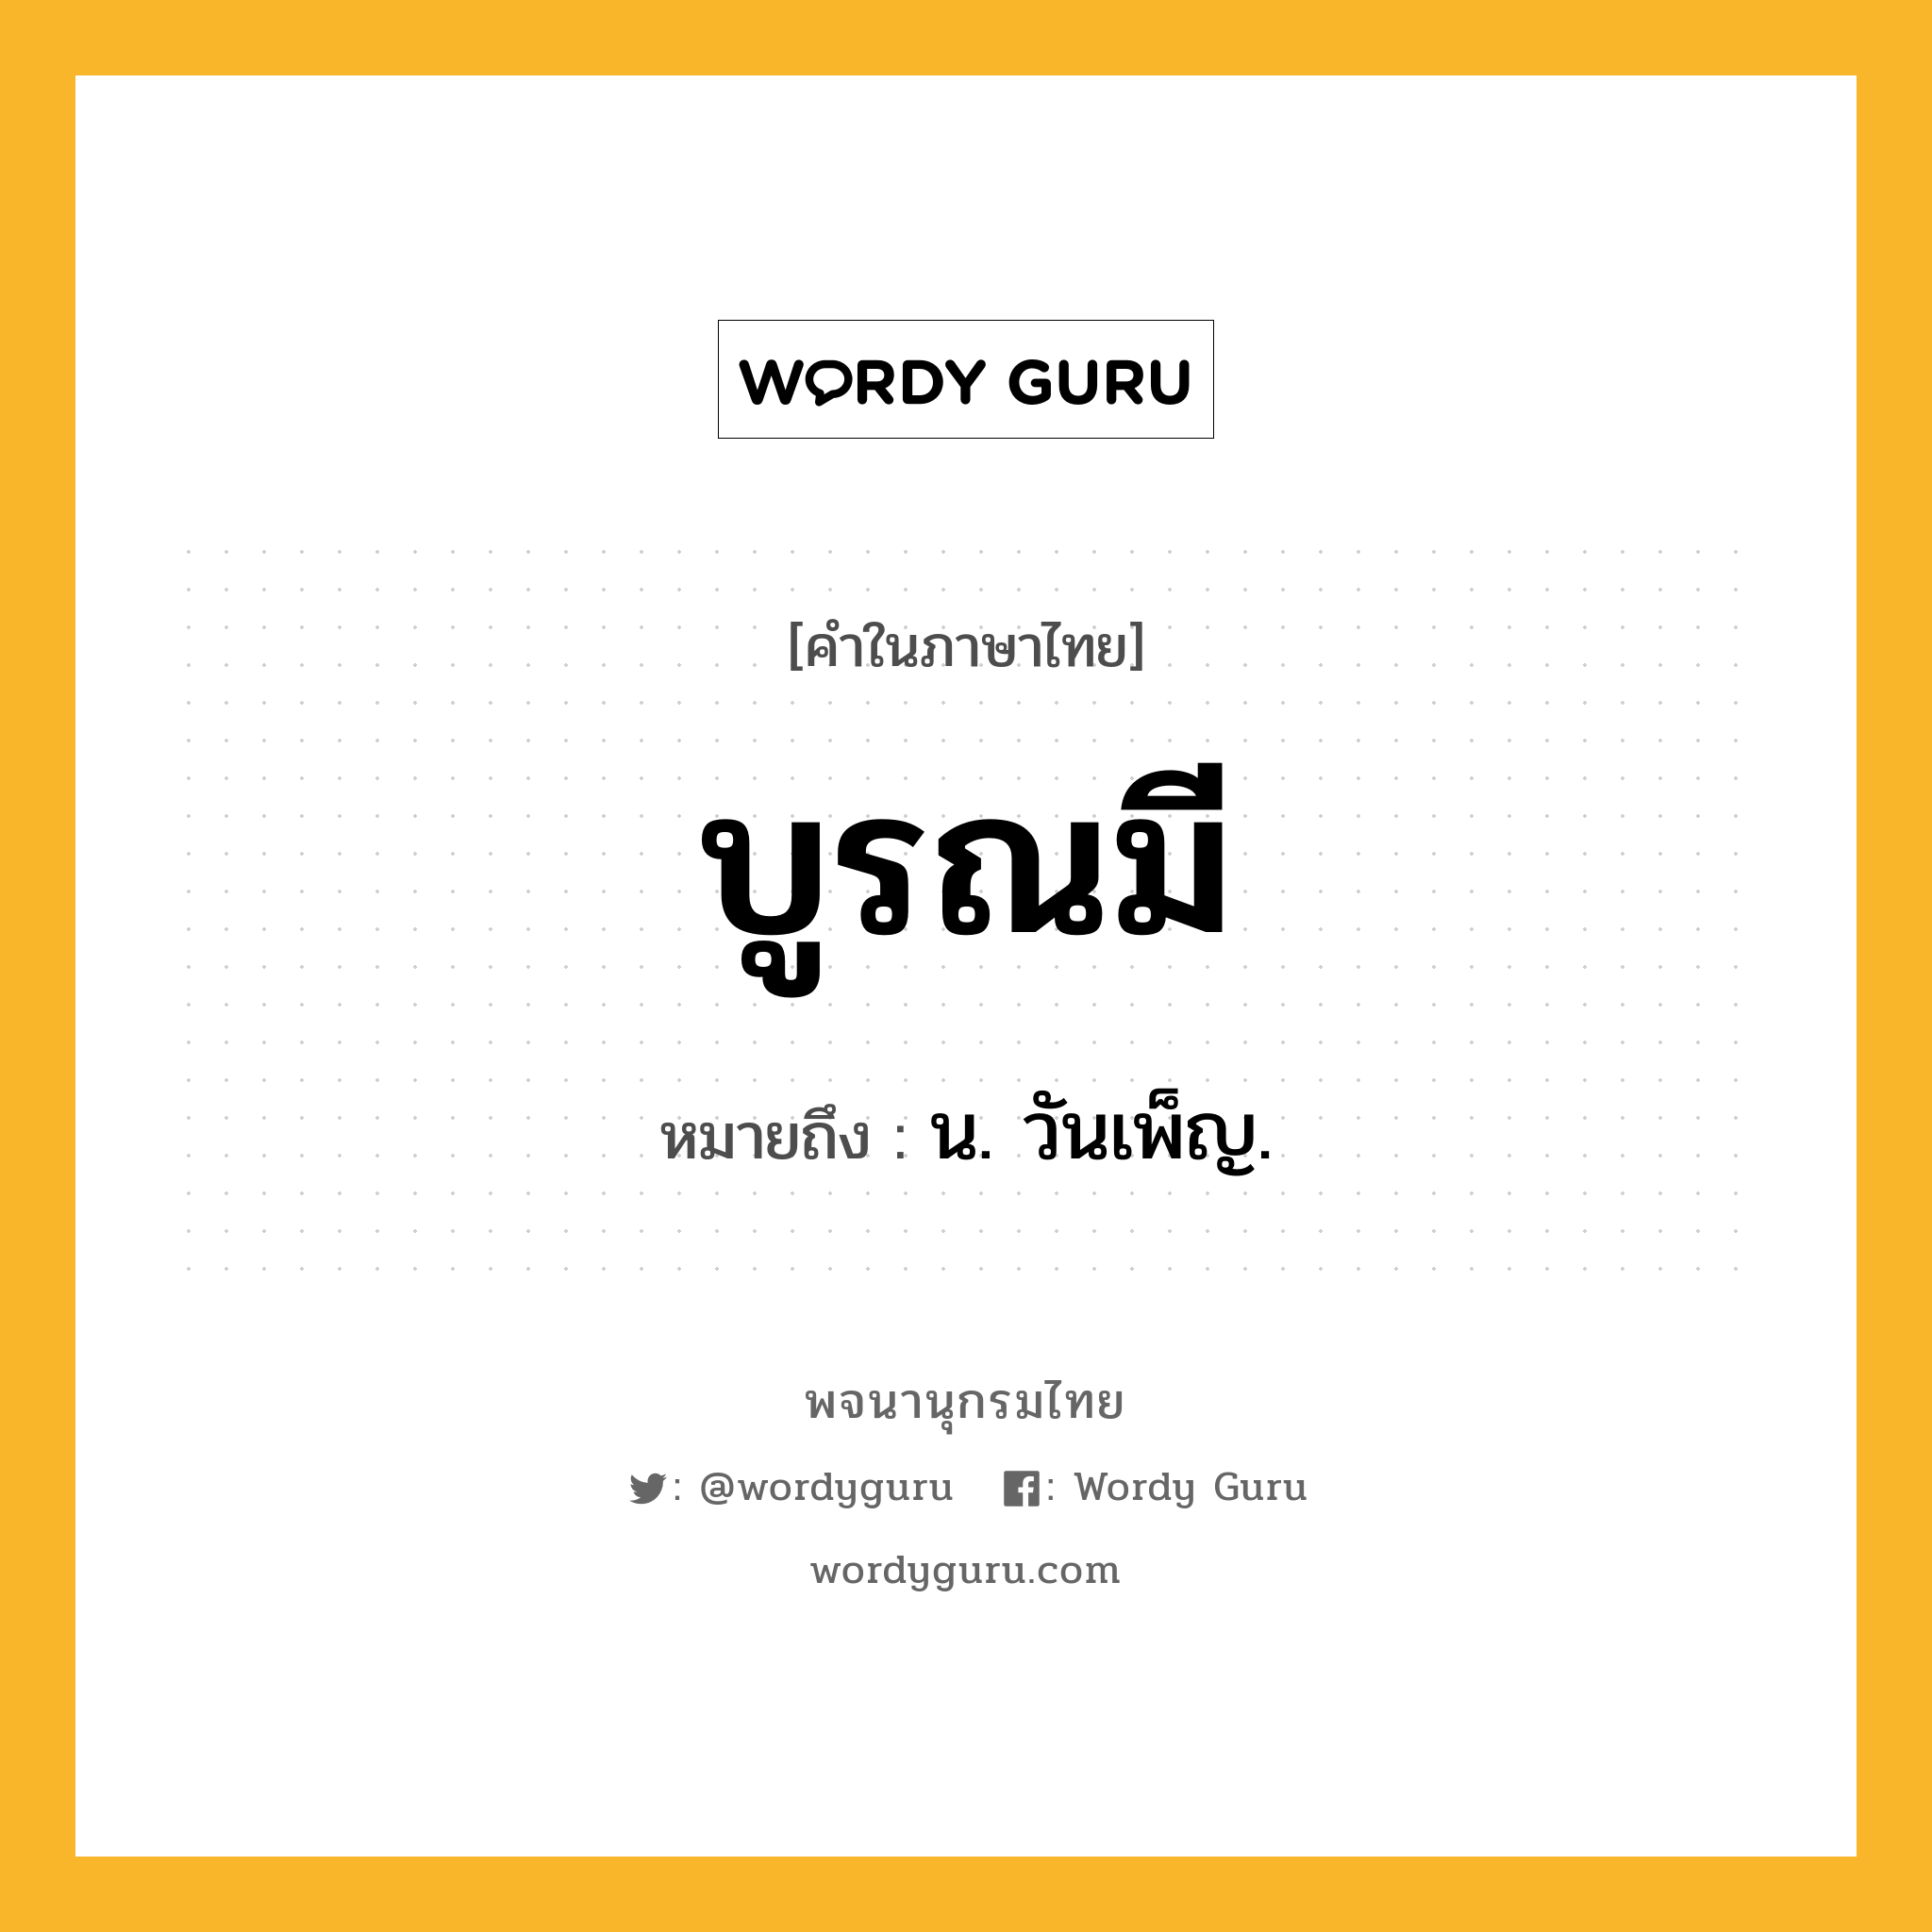 บูรณมี ความหมาย หมายถึงอะไร?, คำในภาษาไทย บูรณมี หมายถึง น. วันเพ็ญ.